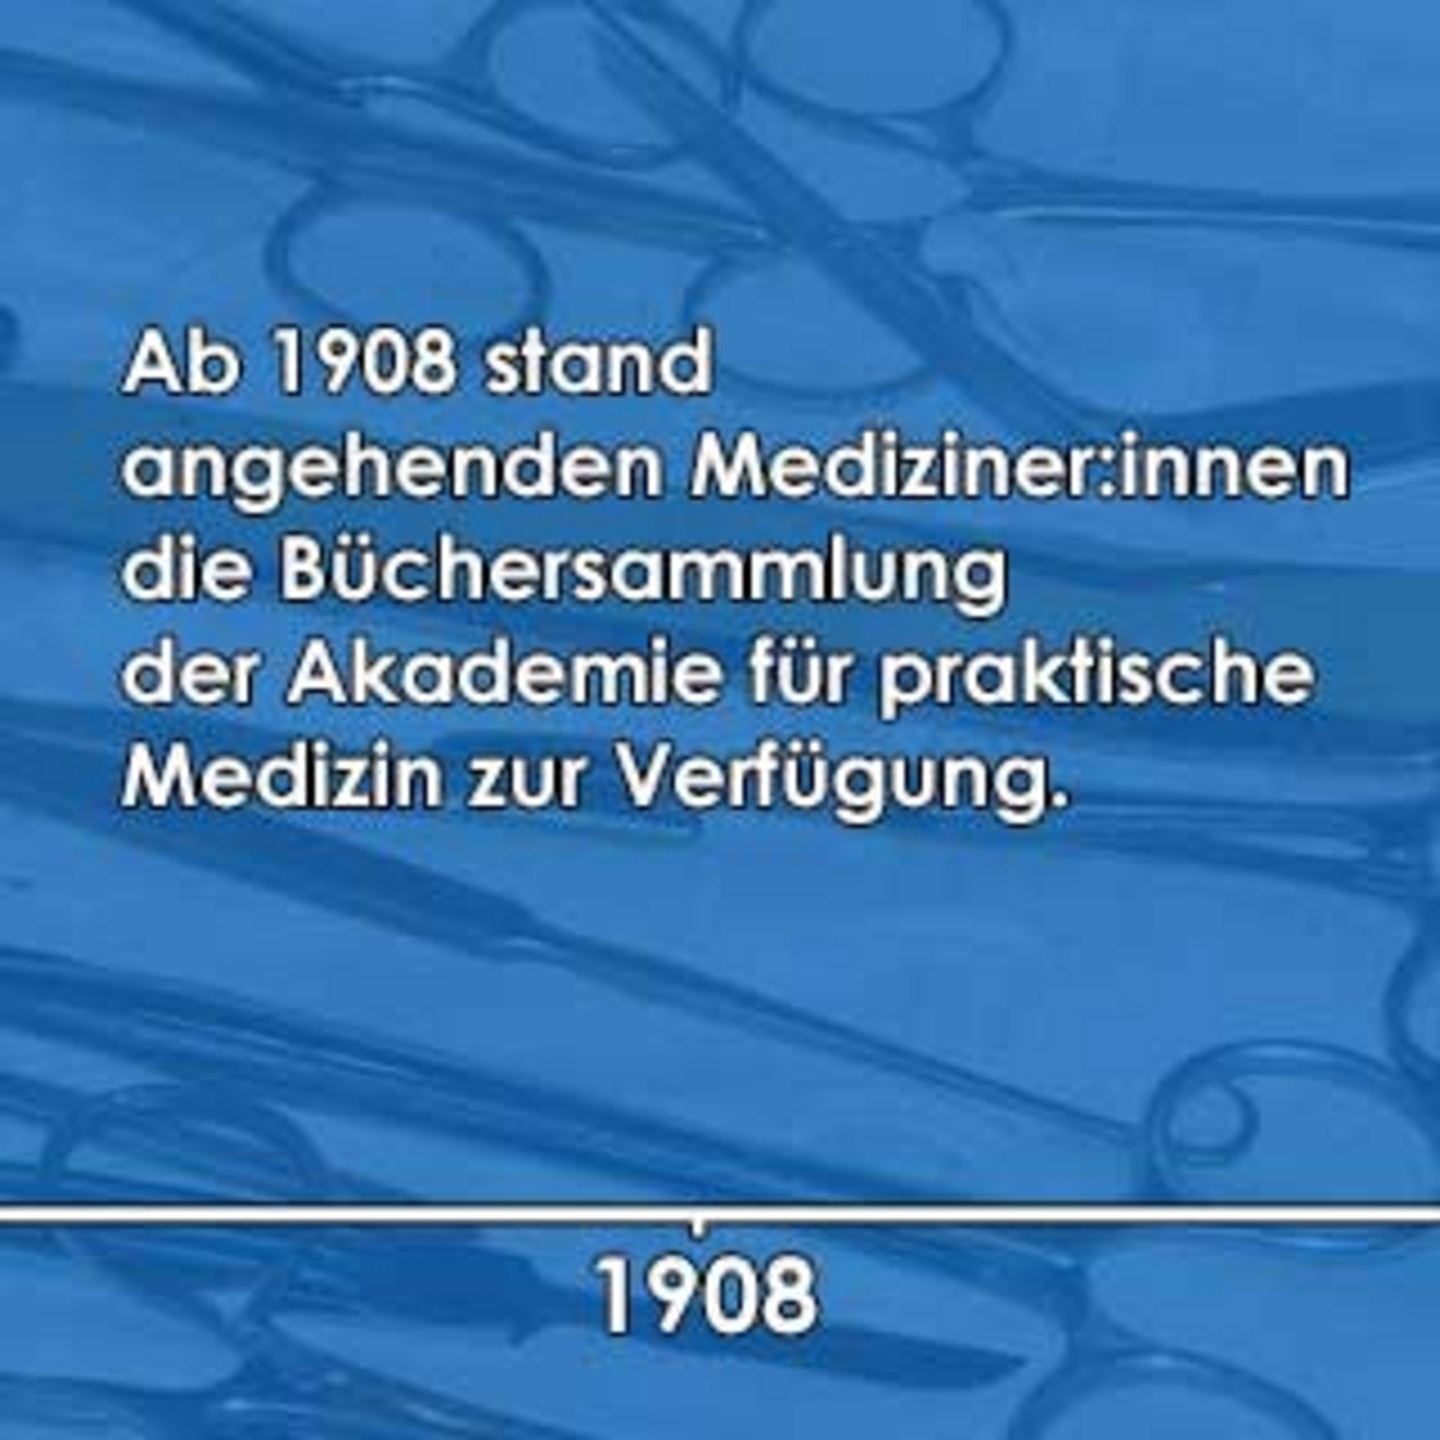 Ein blaues Bild auf dem beschrieben ist, dass ab 1908 die Büchersammlung für angehende Mediziner:innen zur Verfügung stand.